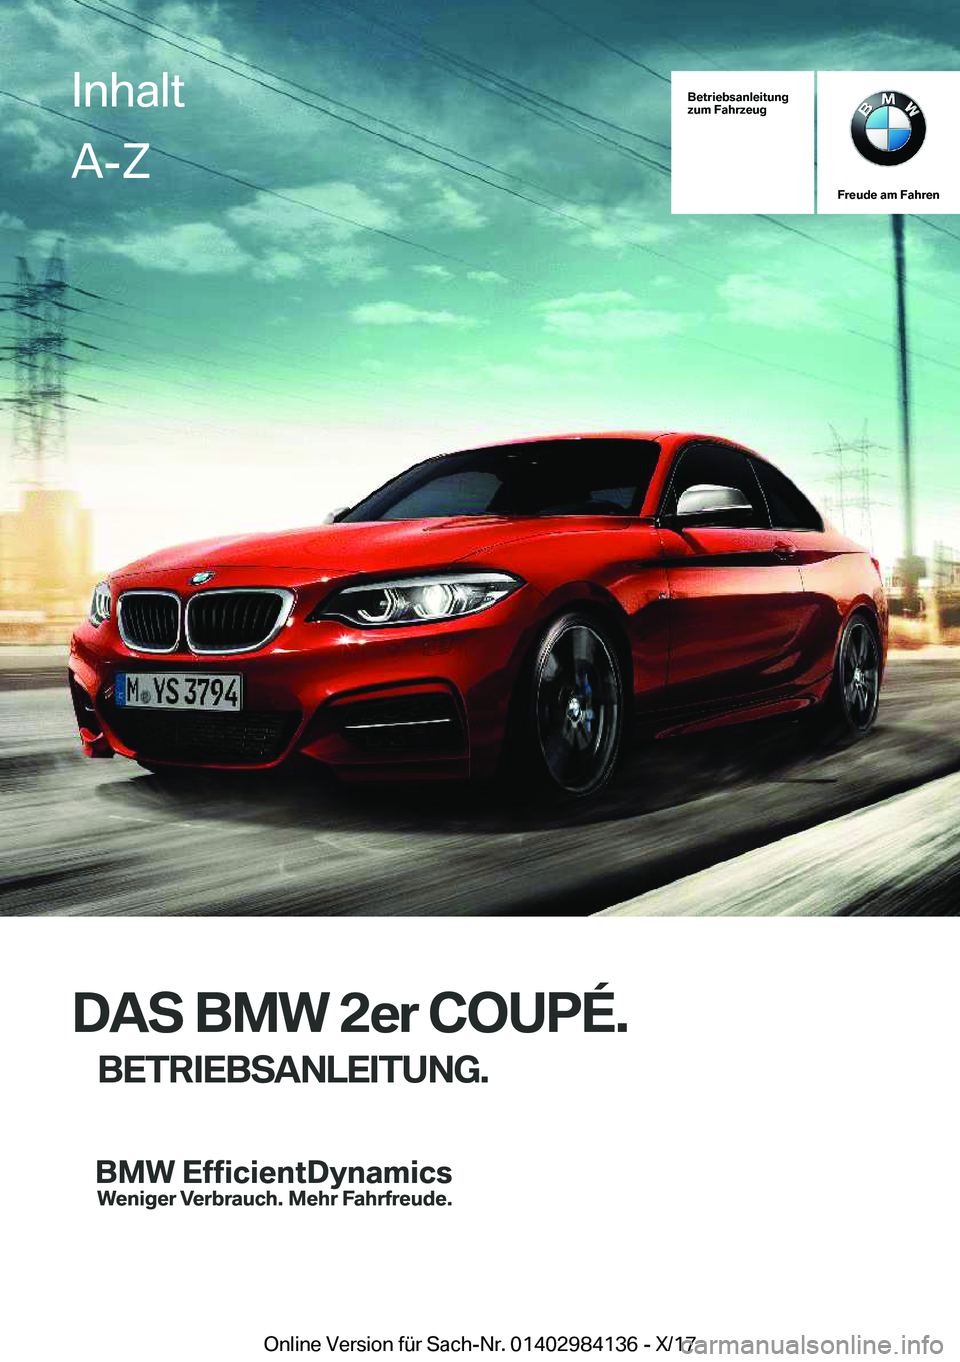 BMW 2 SERIES COUPE 2018  Betriebsanleitungen (in German) �B�e�t�r�i�e�b�s�a�n�l�e�i�t�u�n�g
�z�u�m��F�a�h�r�z�e�u�g
�F�r�e�u�d�e��a�m��F�a�h�r�e�n
�D�A�S��B�M�W��2�e�r��C�O�U�P�